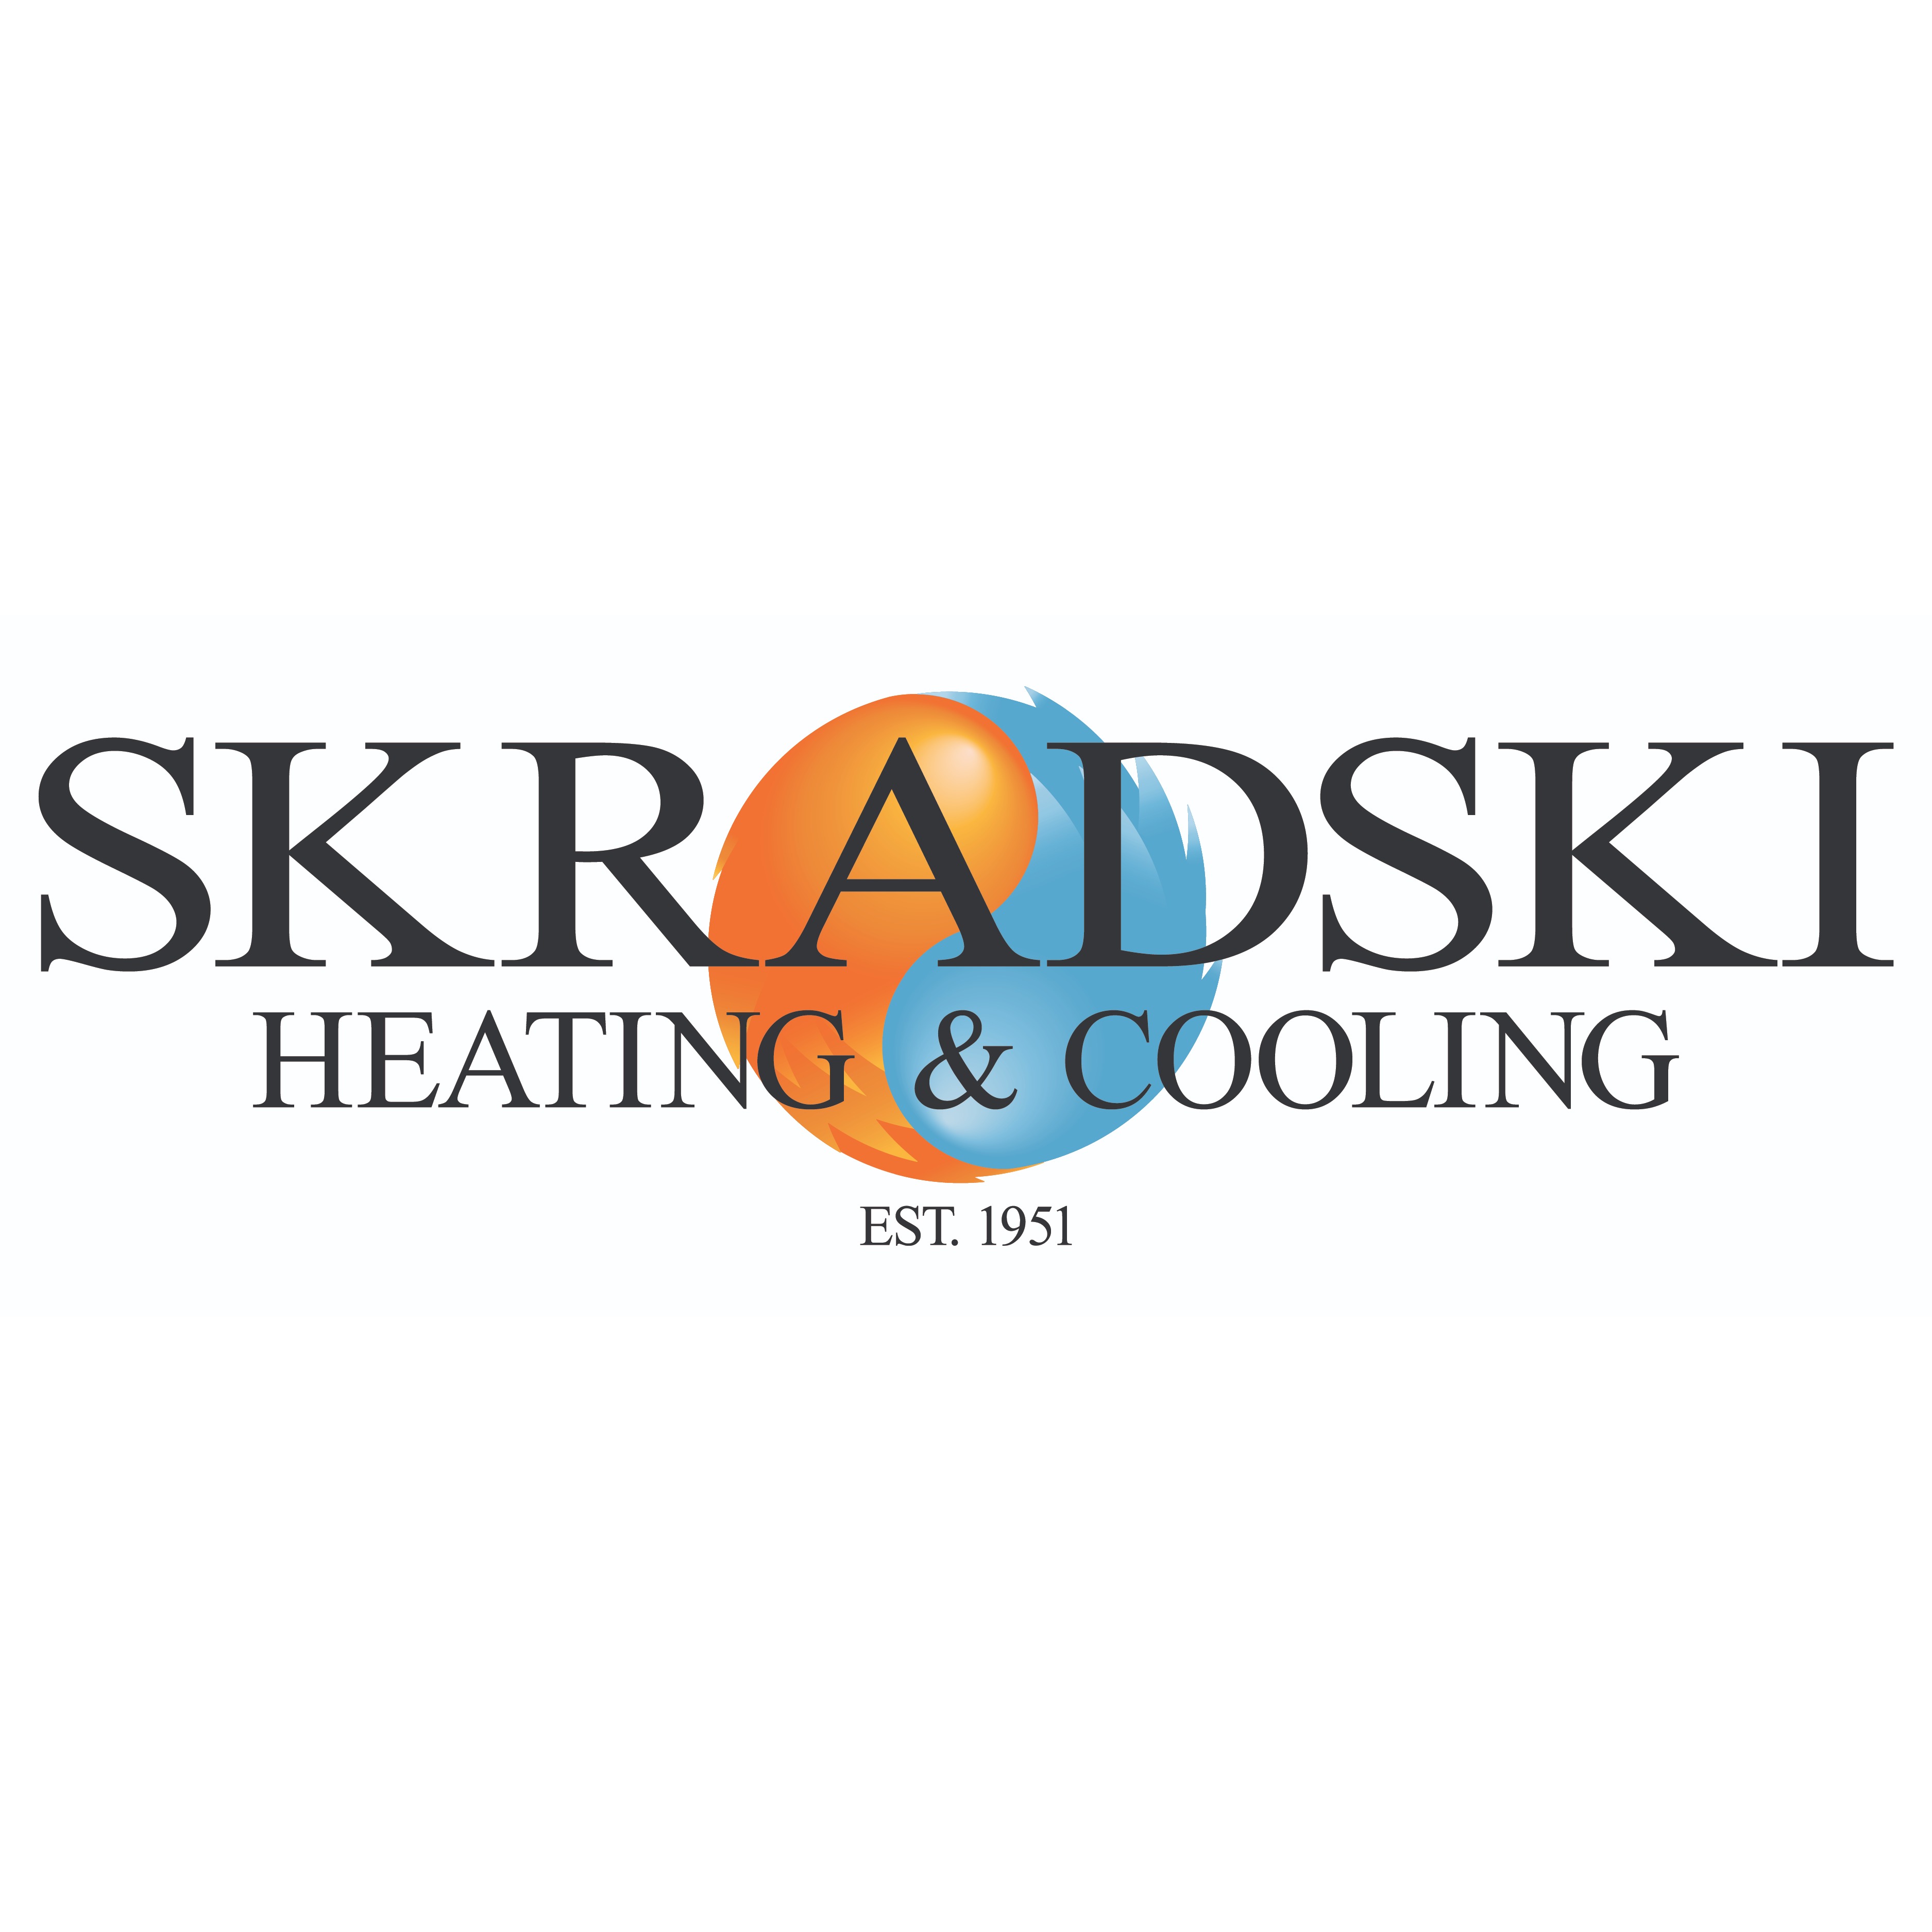 Skradski Heating & Cooling - Omaha, NE 68107 - (402)333-2928 | ShowMeLocal.com